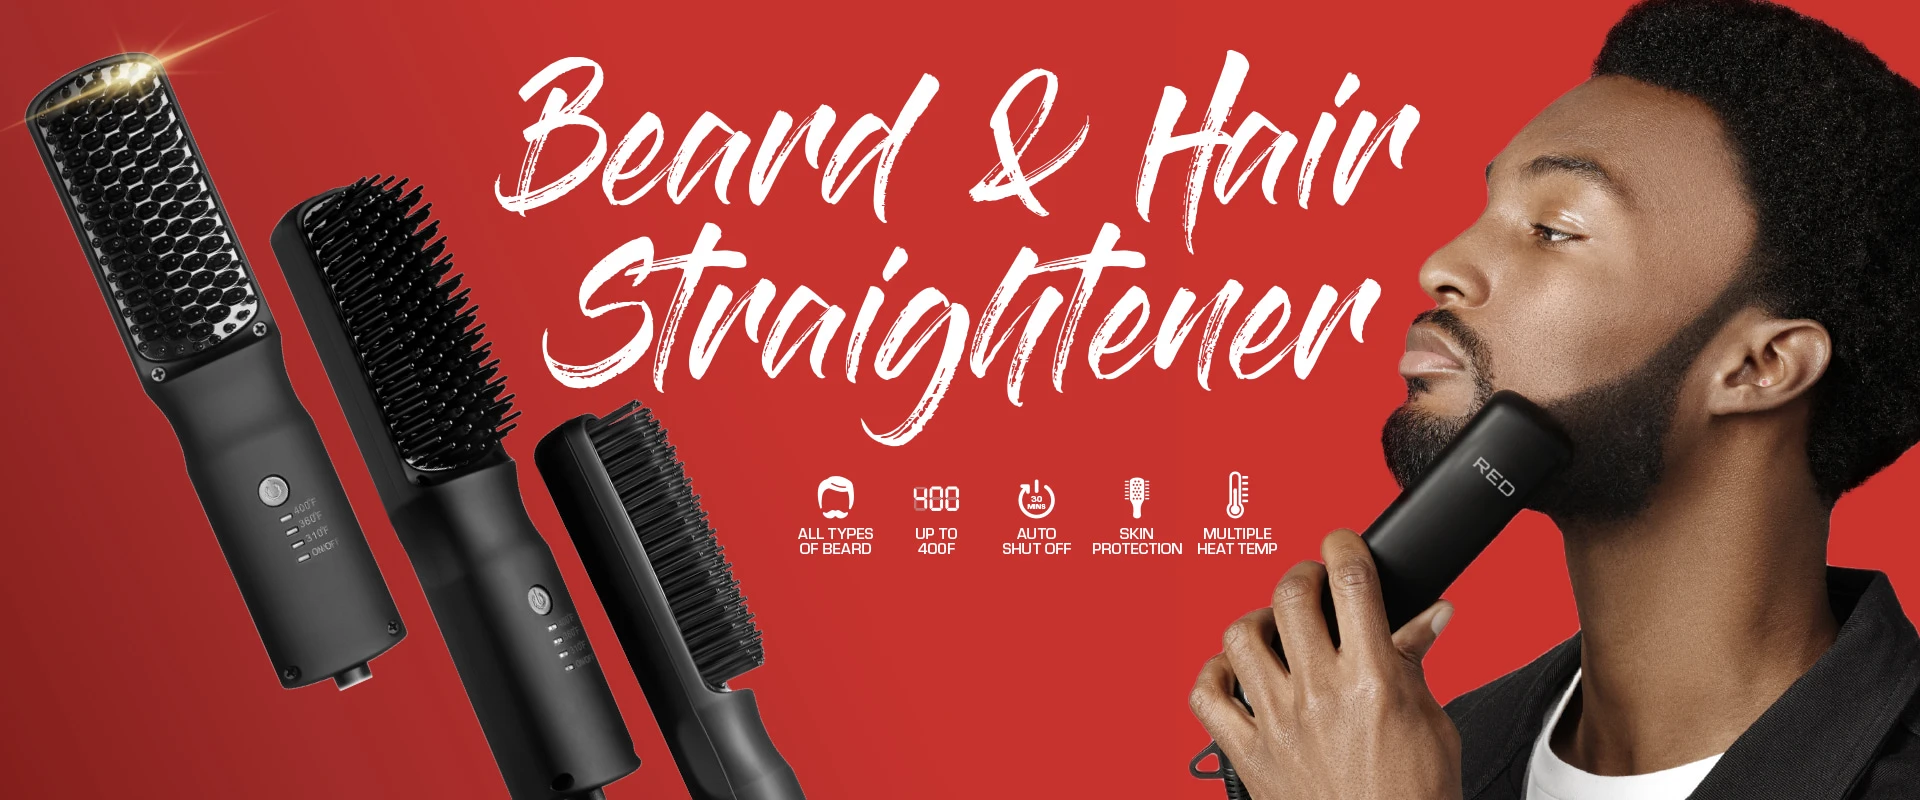 Beard and hair straightener